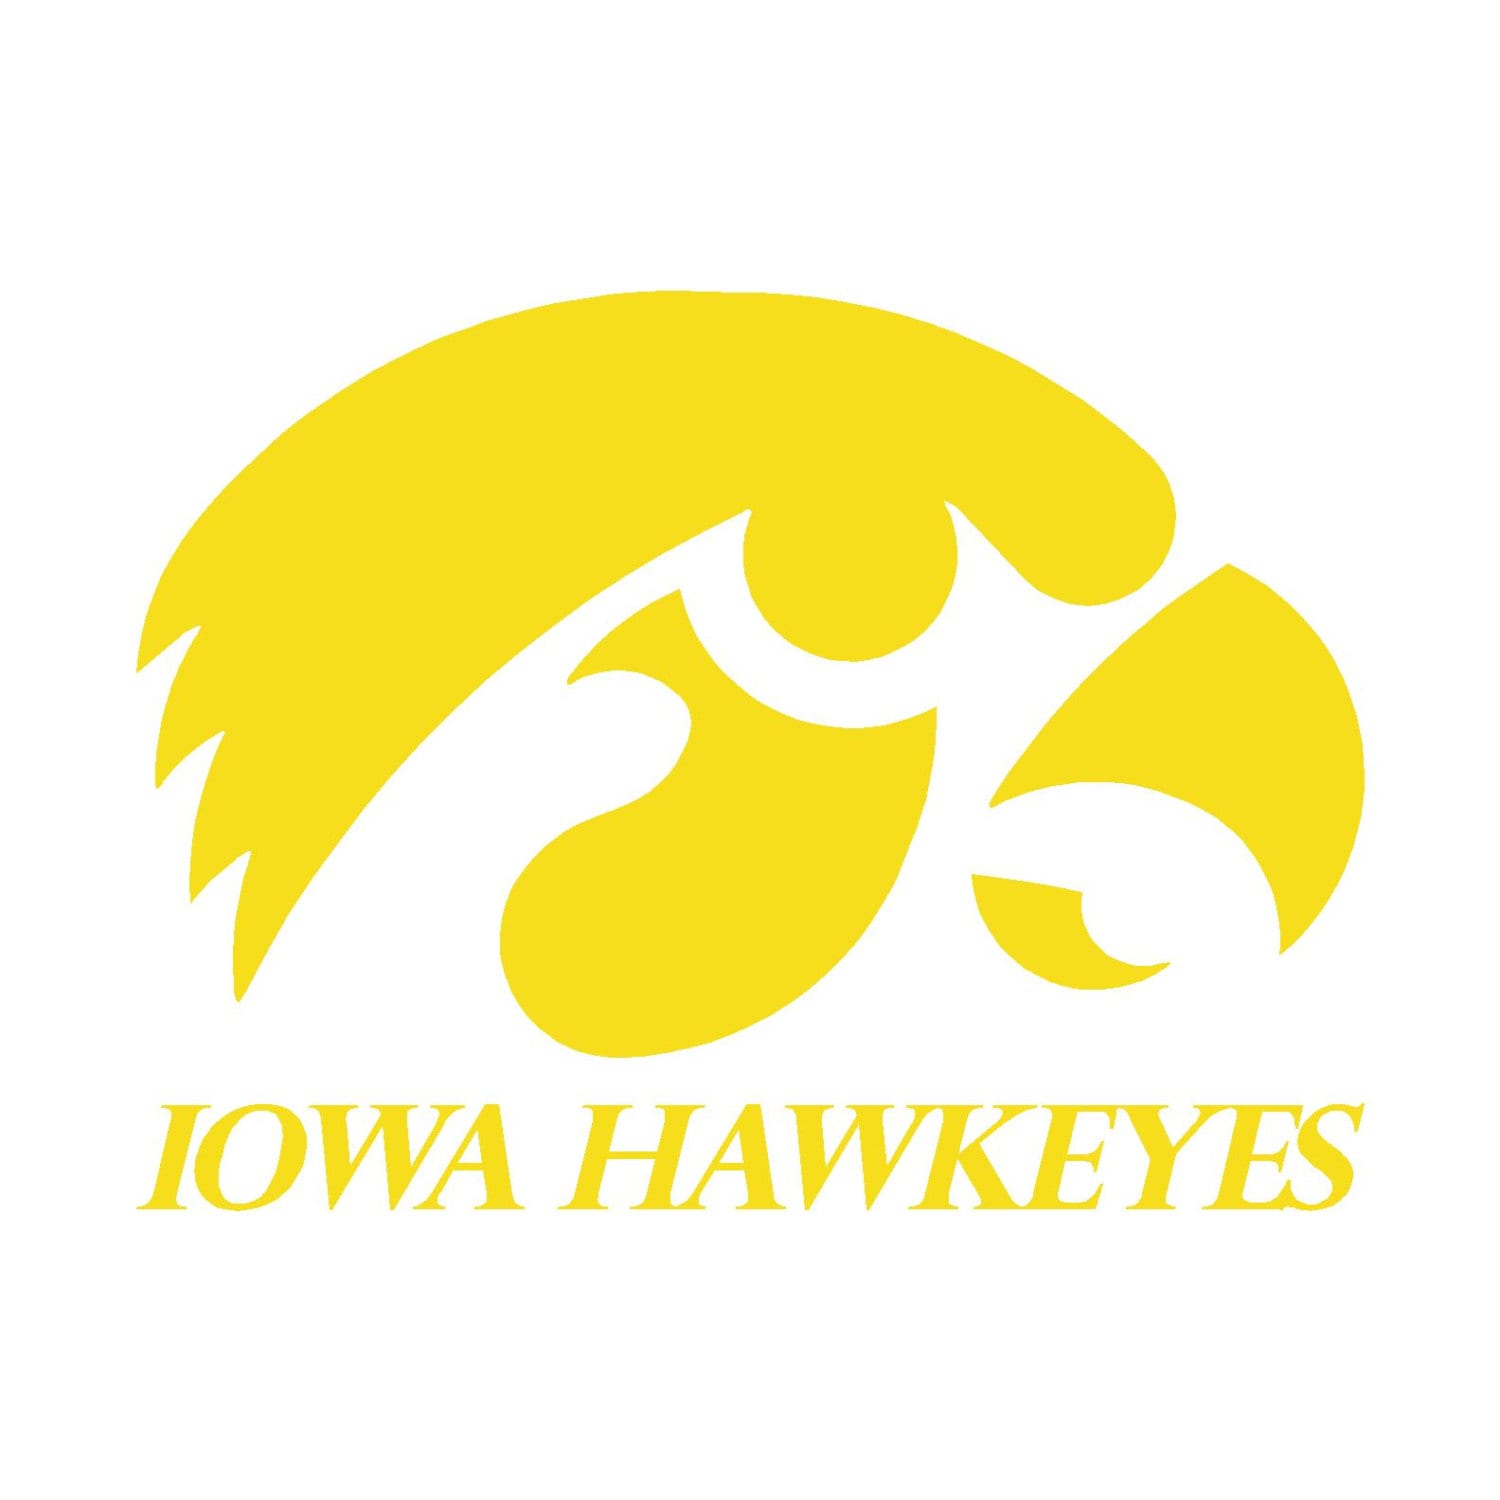 Download Iowa Hawkeyes Cornhole Decals 18 pair by LifeExpressionsVinyl